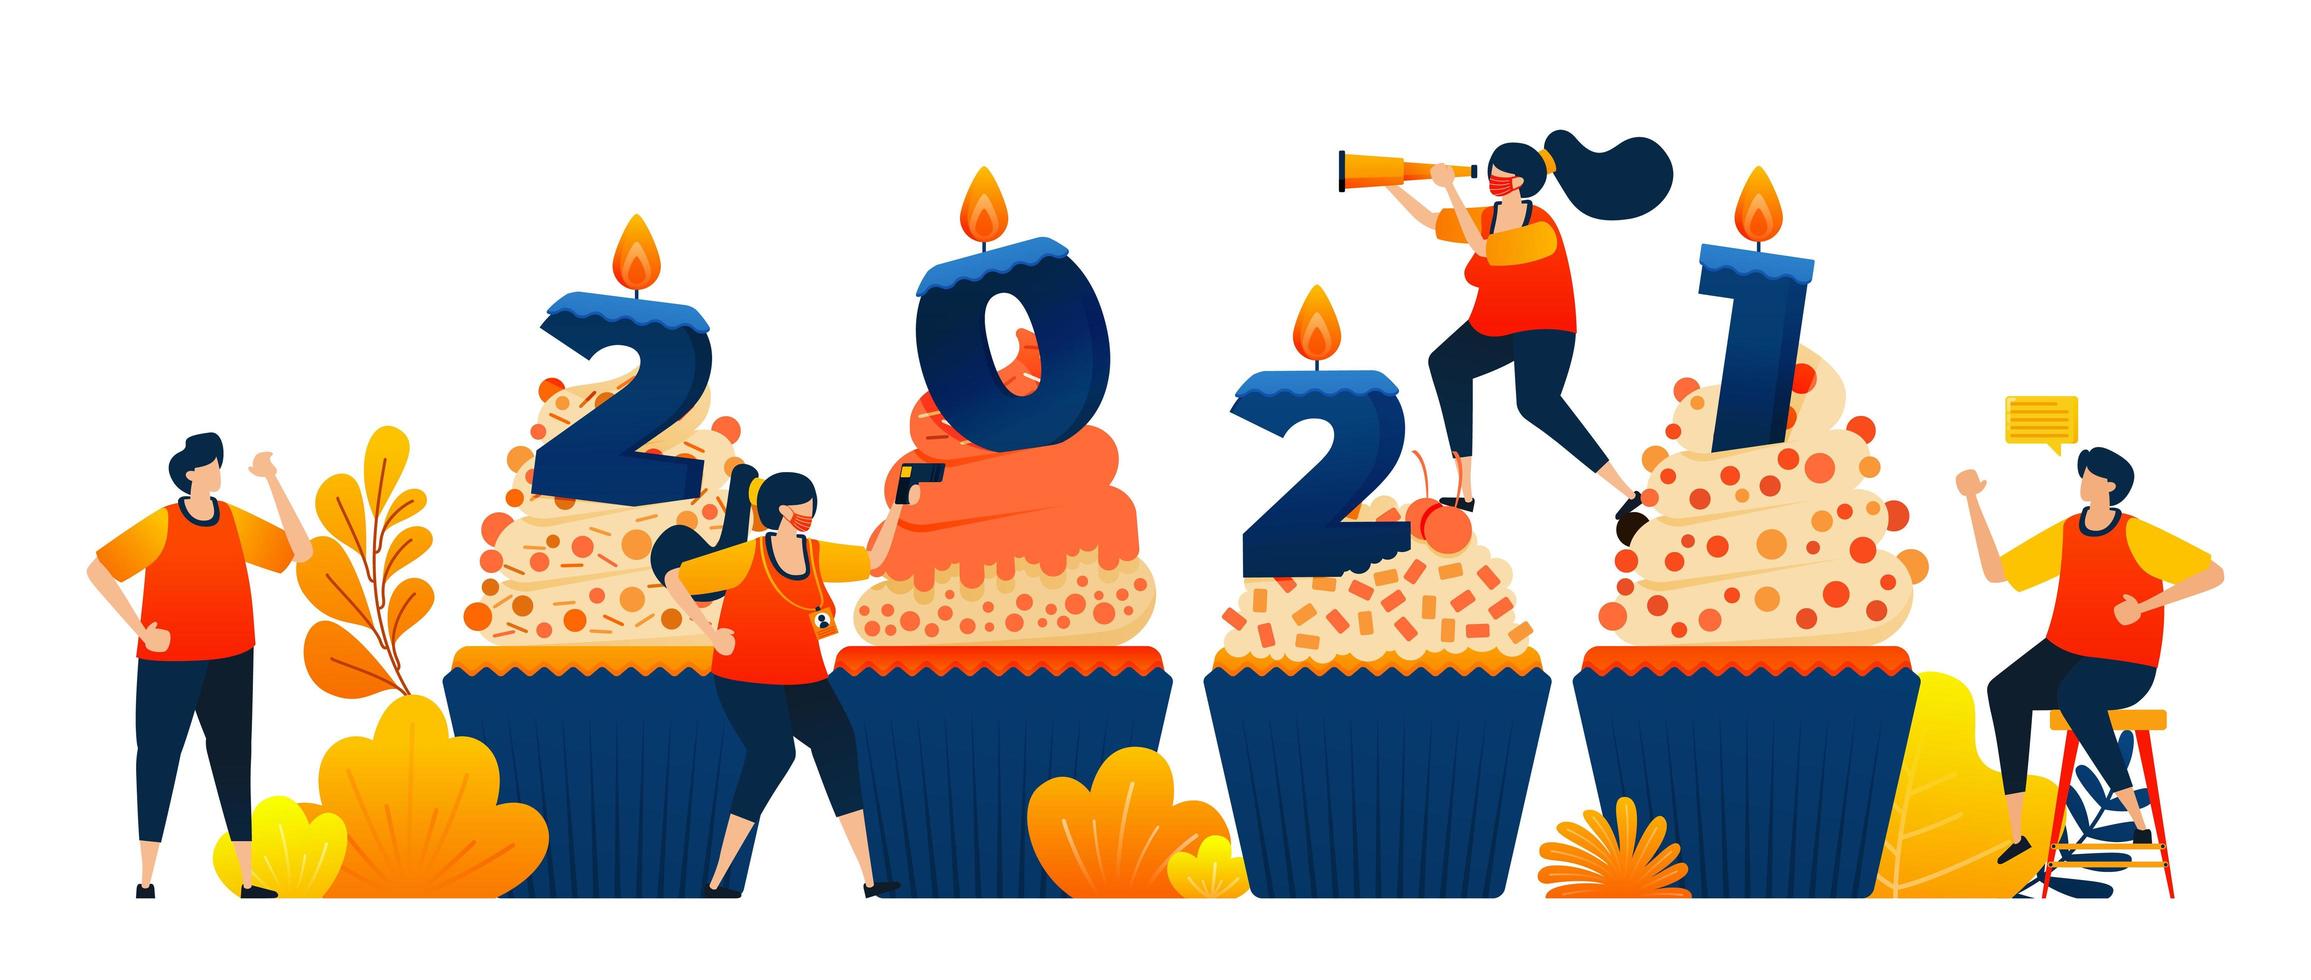 aftellen van 2020 tot 2021 met als thema cupcakes om nieuwjaar met kaars te vieren. vector illustratie concept kan worden gebruikt voor bestemmingspagina, sjabloon, ui ux, web, mobiele app, poster, banner, website